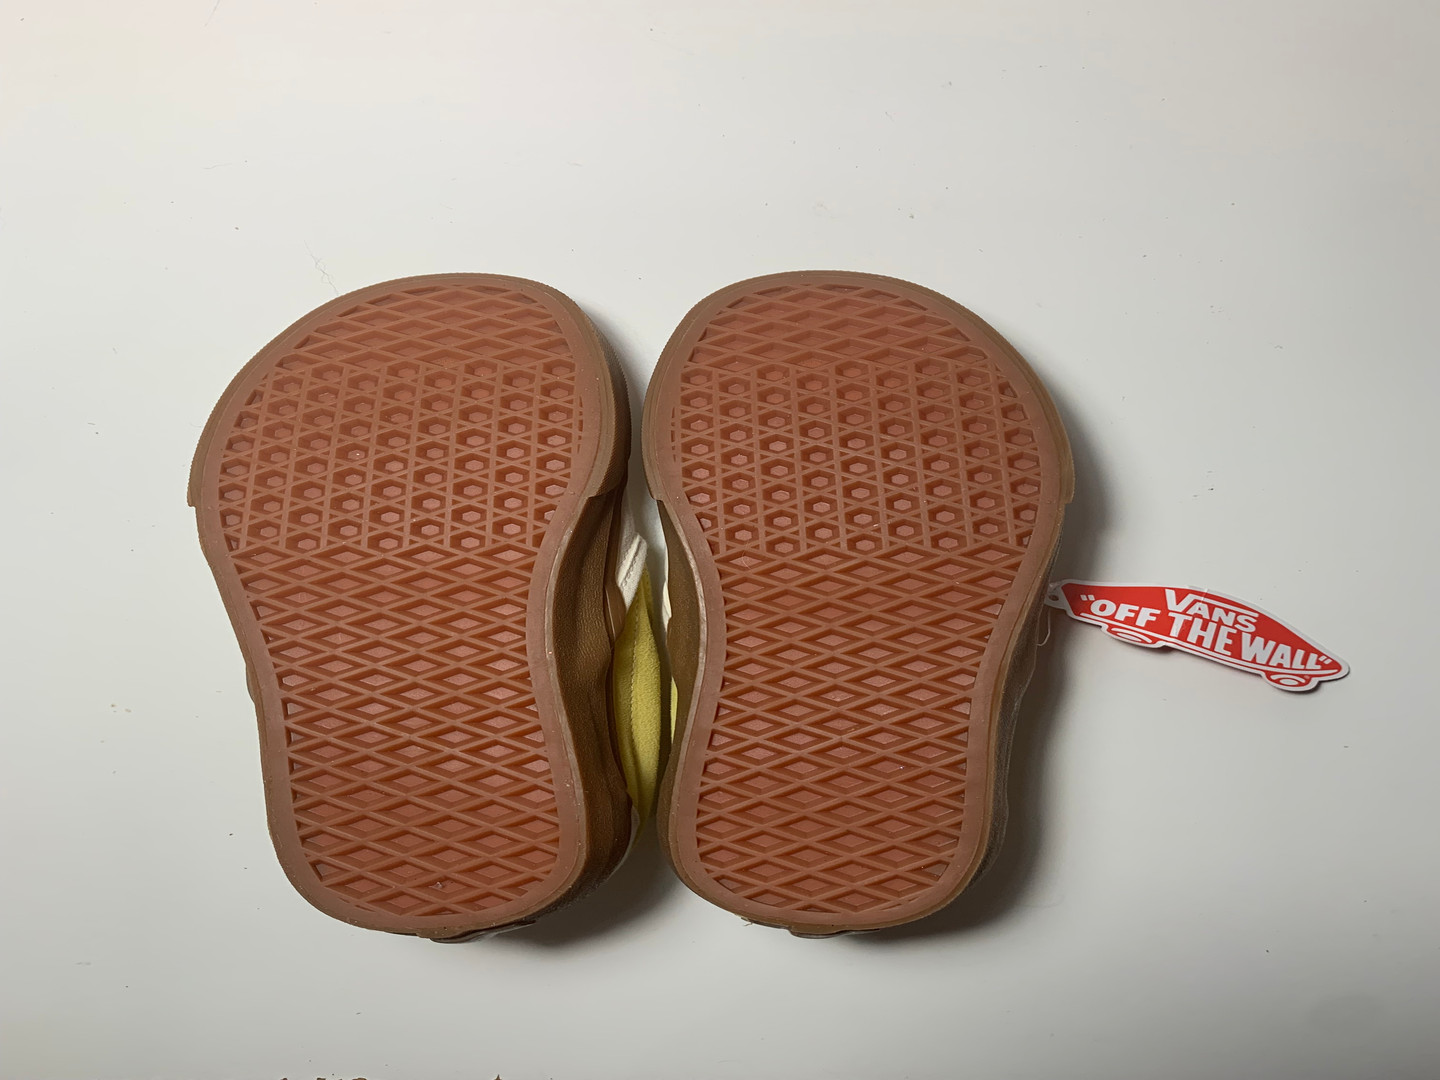 zapatos para hombre - Alpargatas Nuevas Vans Unisex Blancas con Amarillo Suela Marrón 3